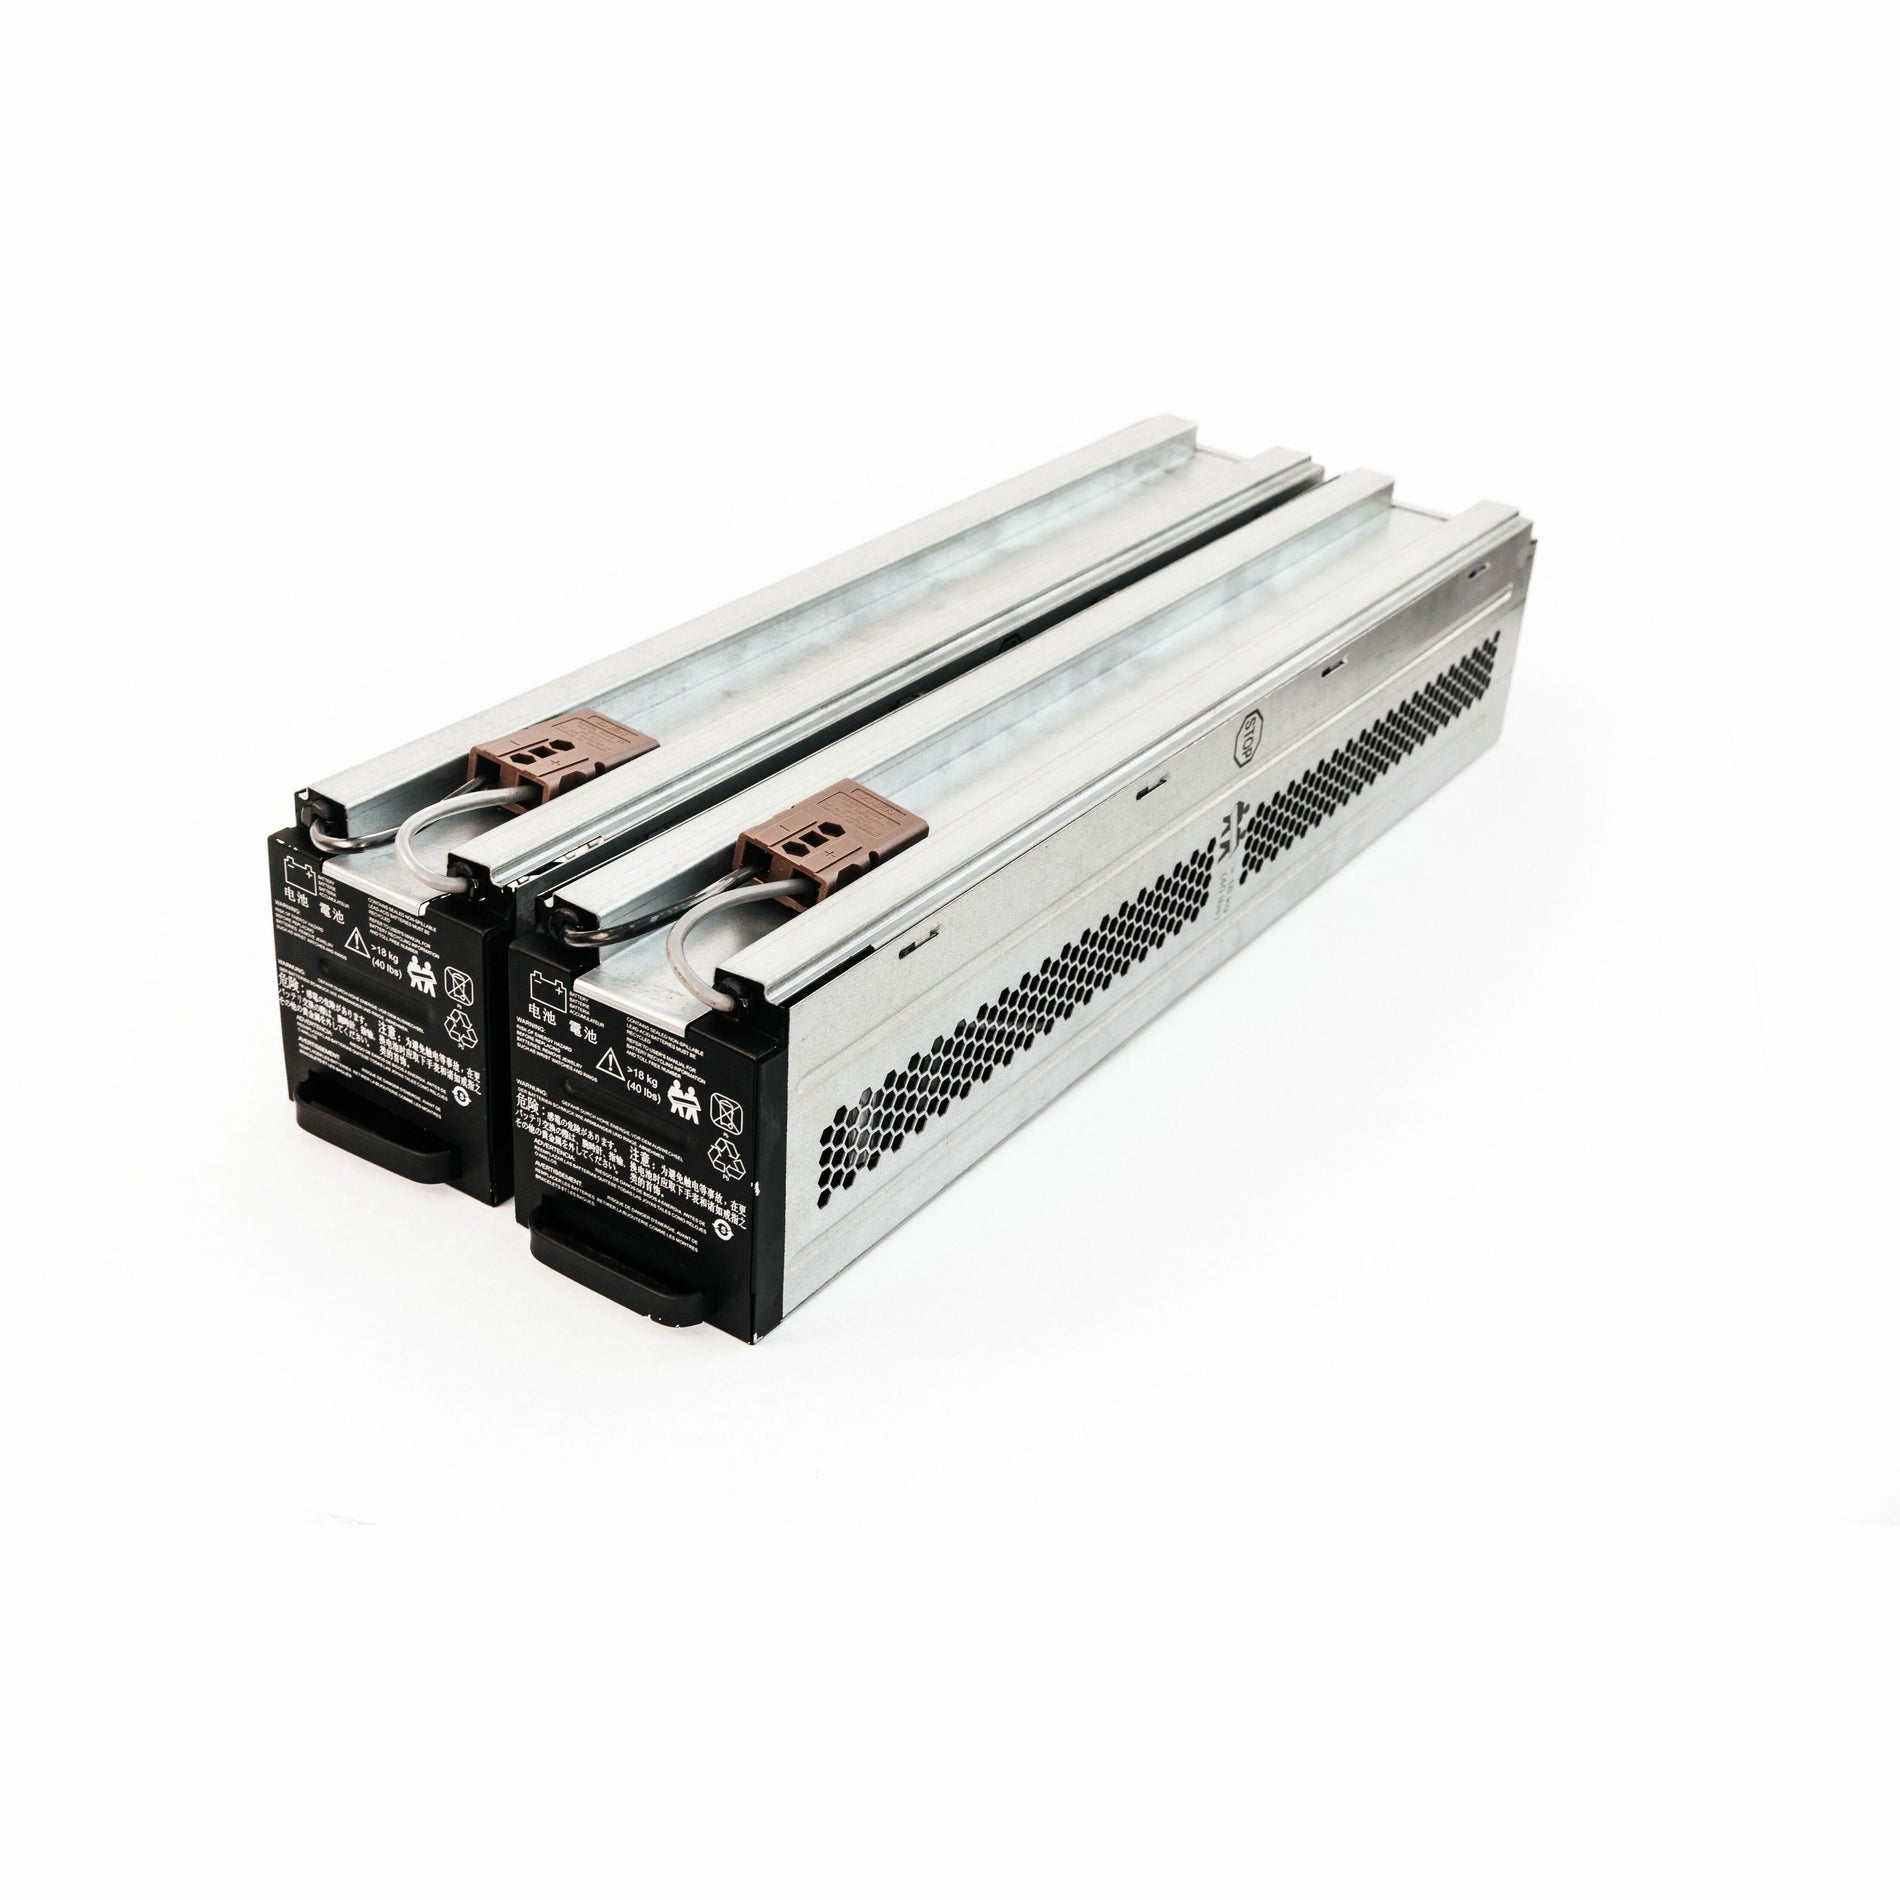 BTI APCRBC140-SLA140 UPS Battery Pack, Compatible with APC UPS